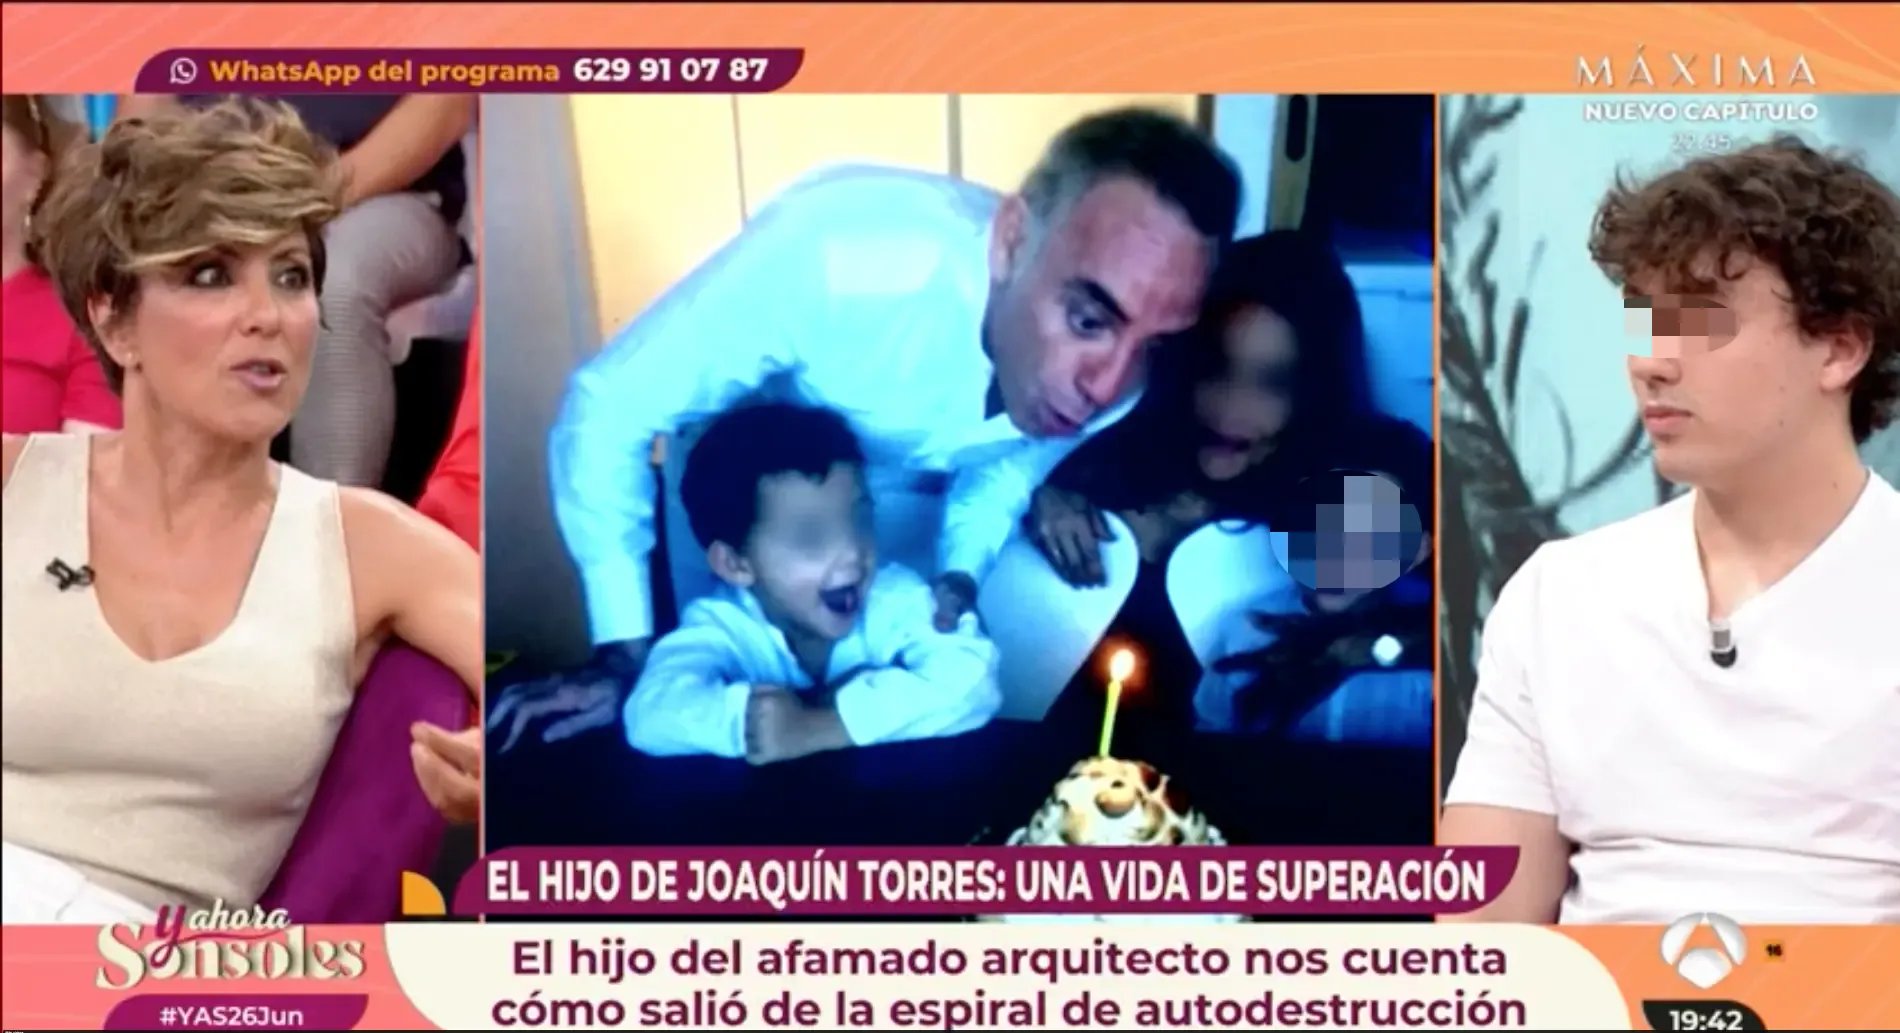 Joaquin Torres hijo problemas alcohol drogas historia superación